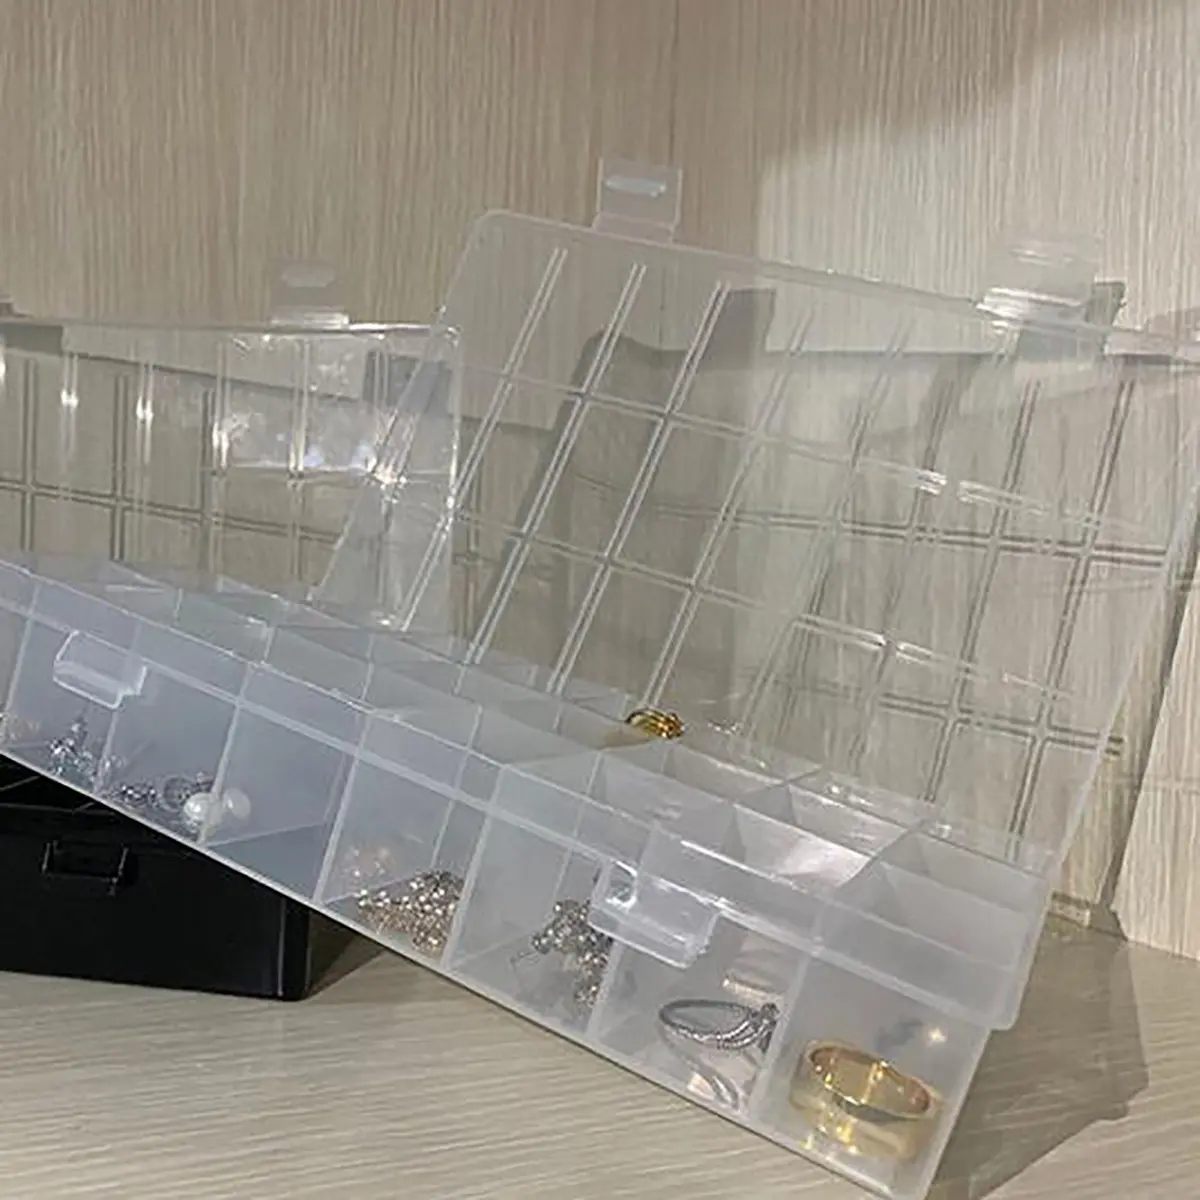 תיבת אחסון תכשיטים קבועה רשת אחסון עם סיכות חומר פלסטיק מחיצה אחסון עגיל תיבת פריטים קטנים